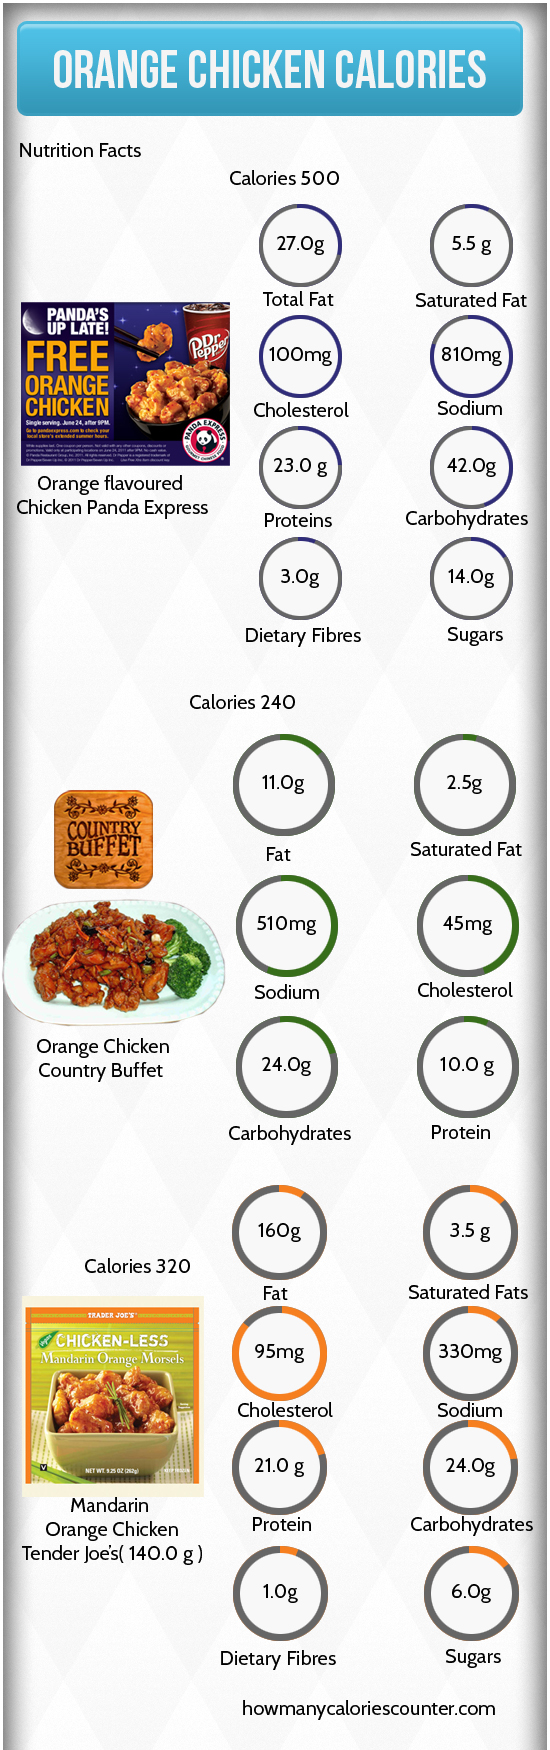 Calories in Orange Chicken